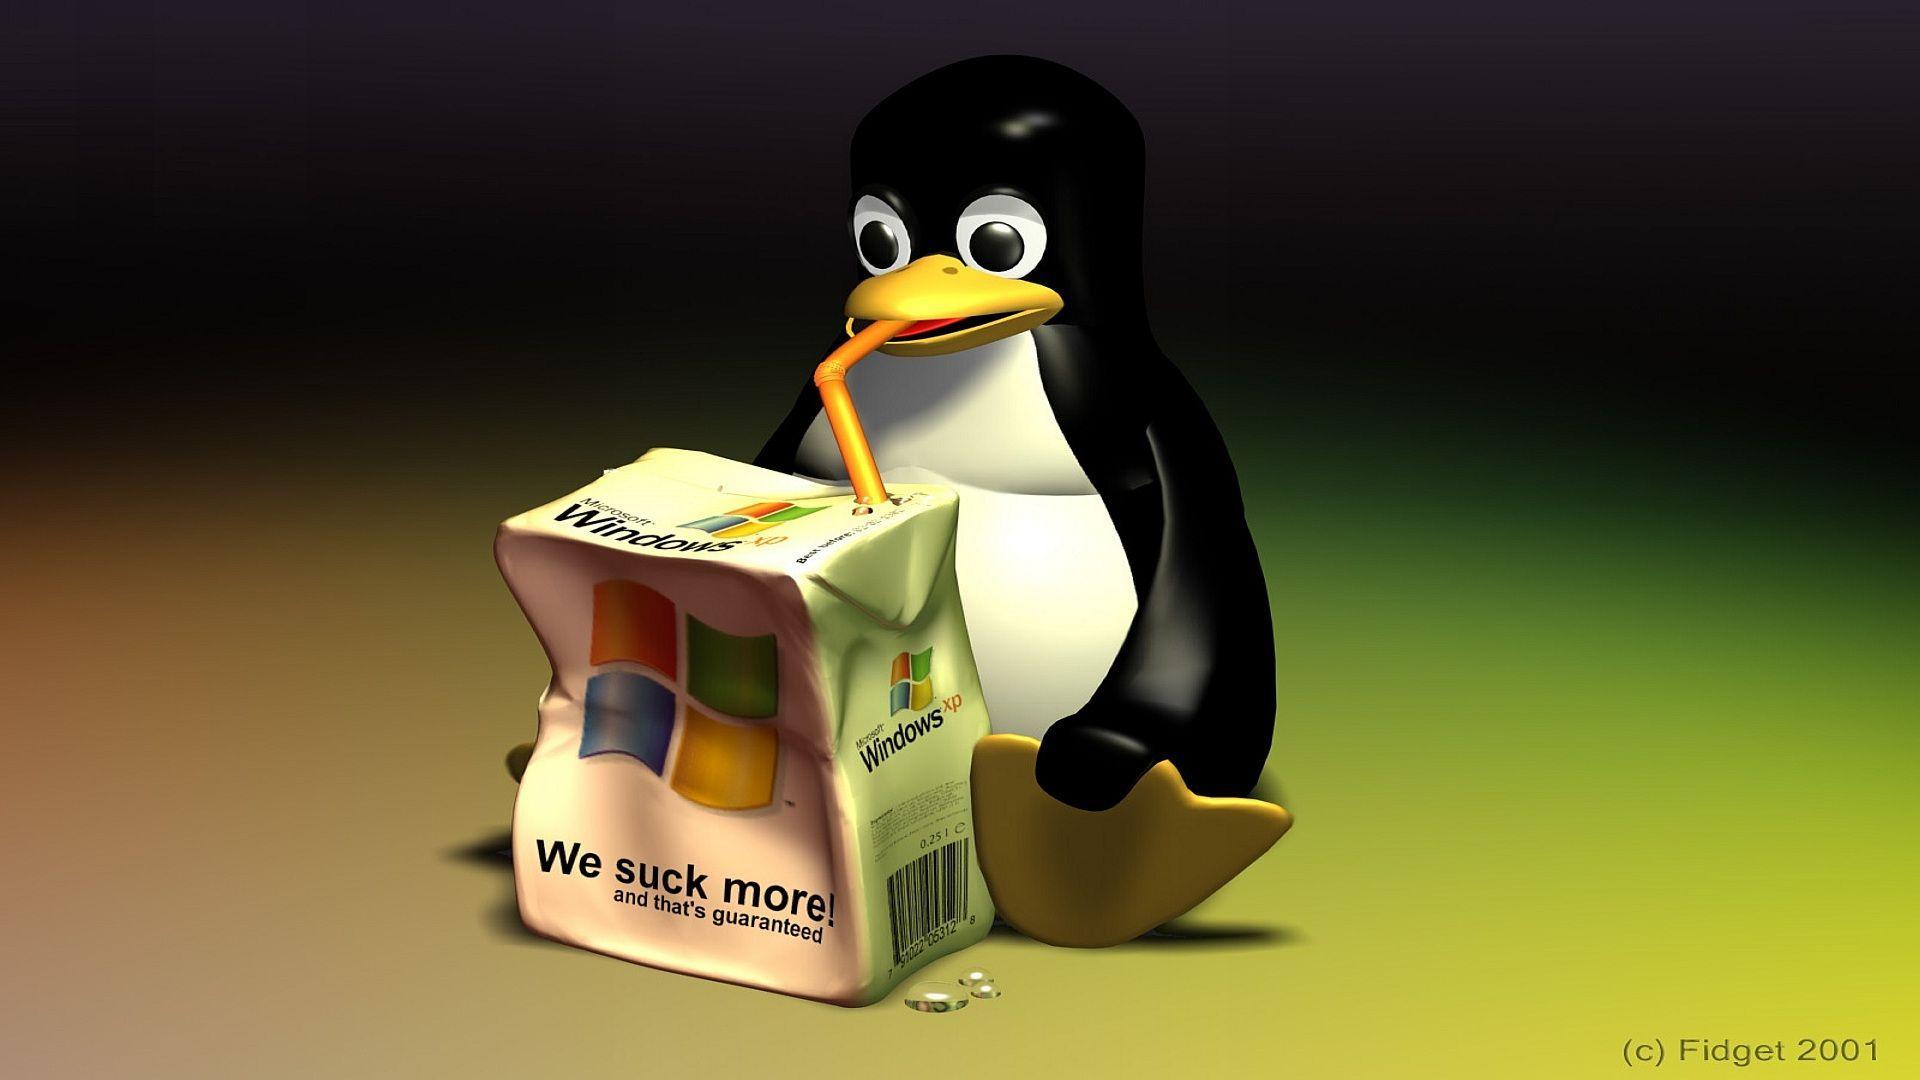 twm] I can't believe it's not Linux! (Minix) : r/unixporn